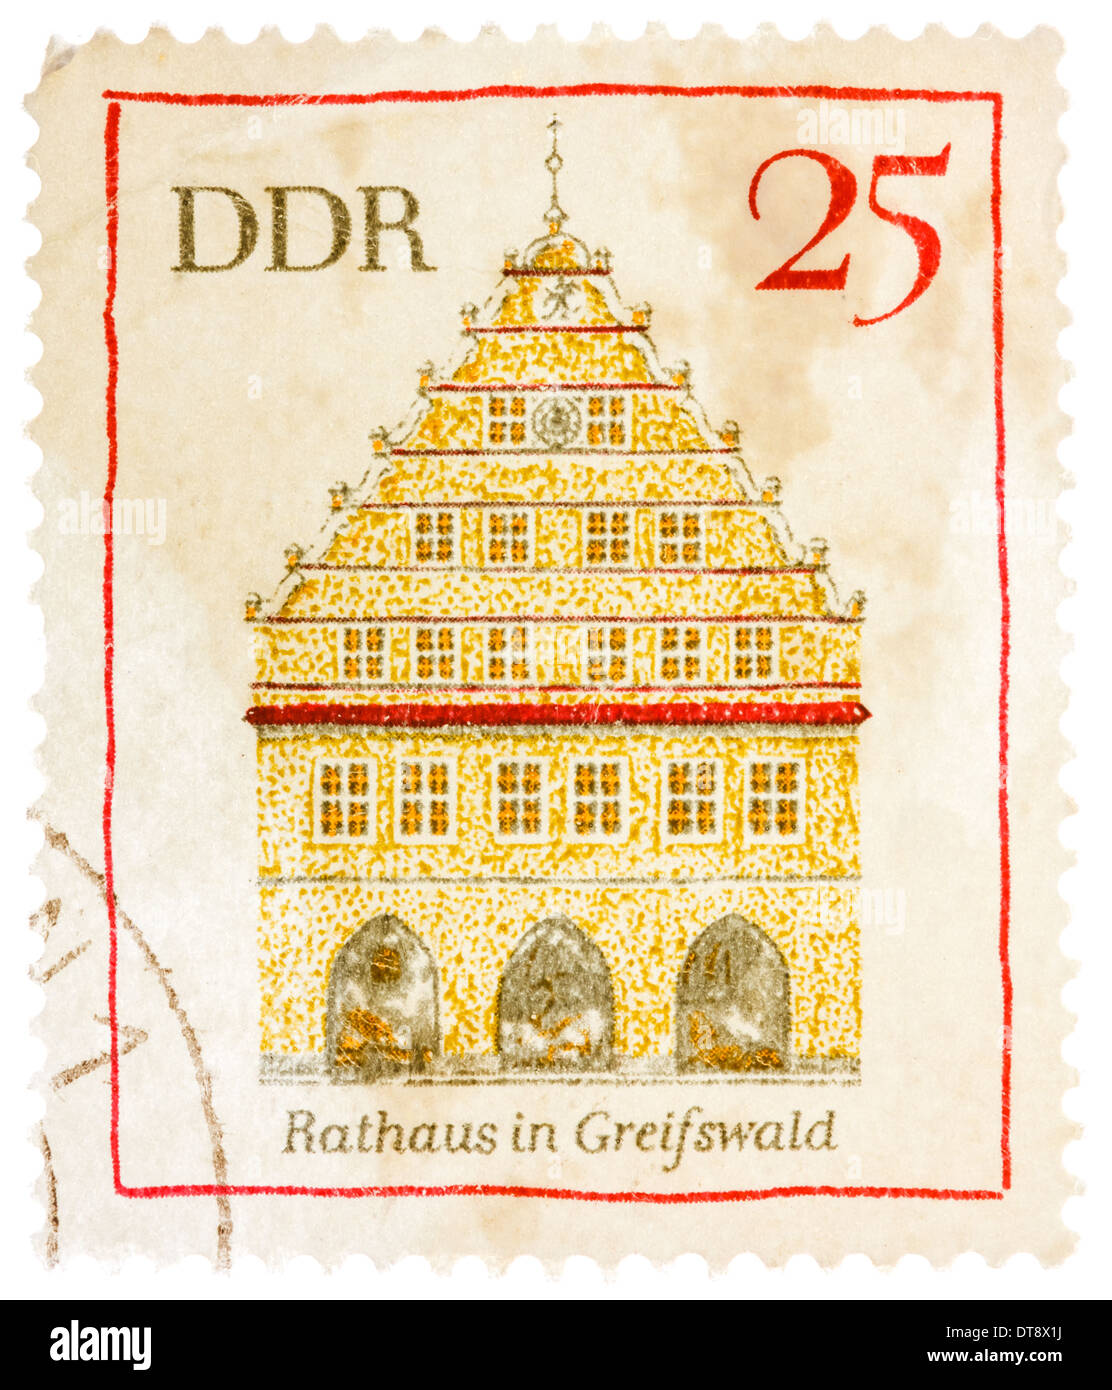 DDR - CIRCA 1974: Eine Briefmarke gedruckt in der Deutschen Demokratischen Republik (DDR) zeigt Greifswald Rathaus, ca. 1974 Stockfoto